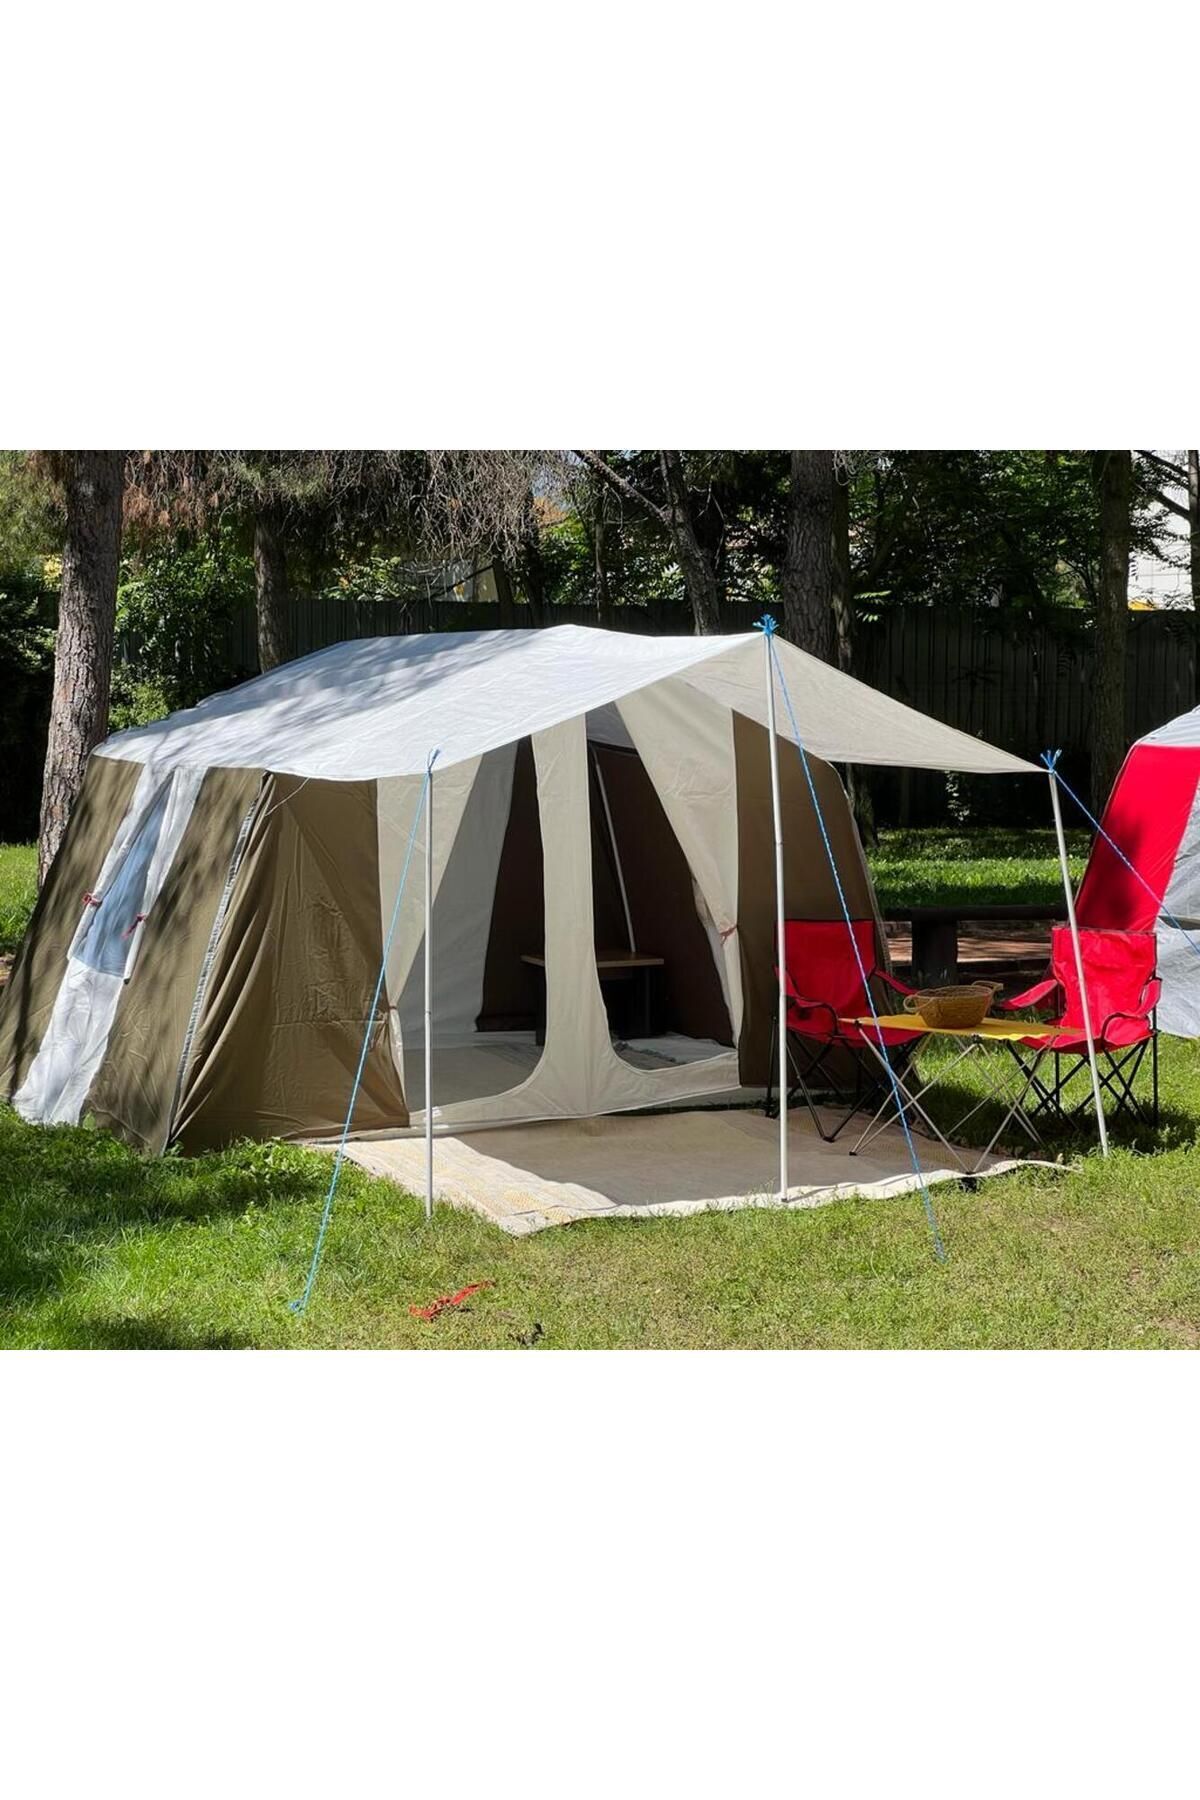 yamaç çadır Mutlaka Açıklamayı Okuyun!! Ferah Kaliteli Kumaşla Haki Renkte Kamp Çadırı